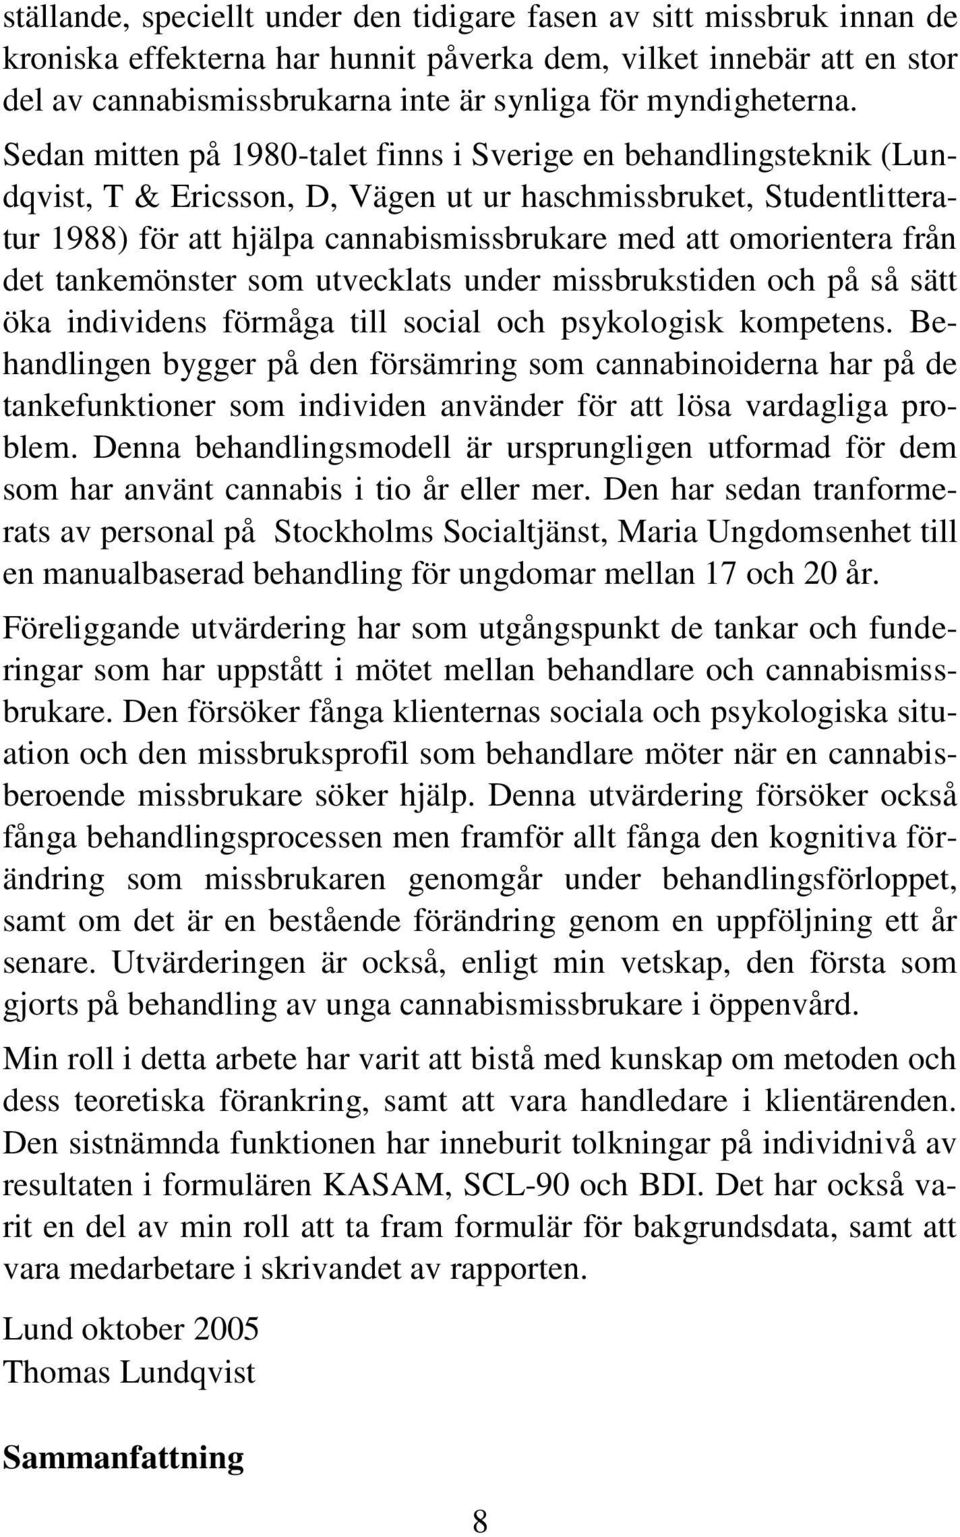 Sedan mitten på 1980-talet finns i Sverige en behandlingsteknik (Lundqvist, T & Ericsson, D, Vägen ut ur haschmissbruket, Studentlitteratur 1988) för att hjälpa cannabismissbrukare med att